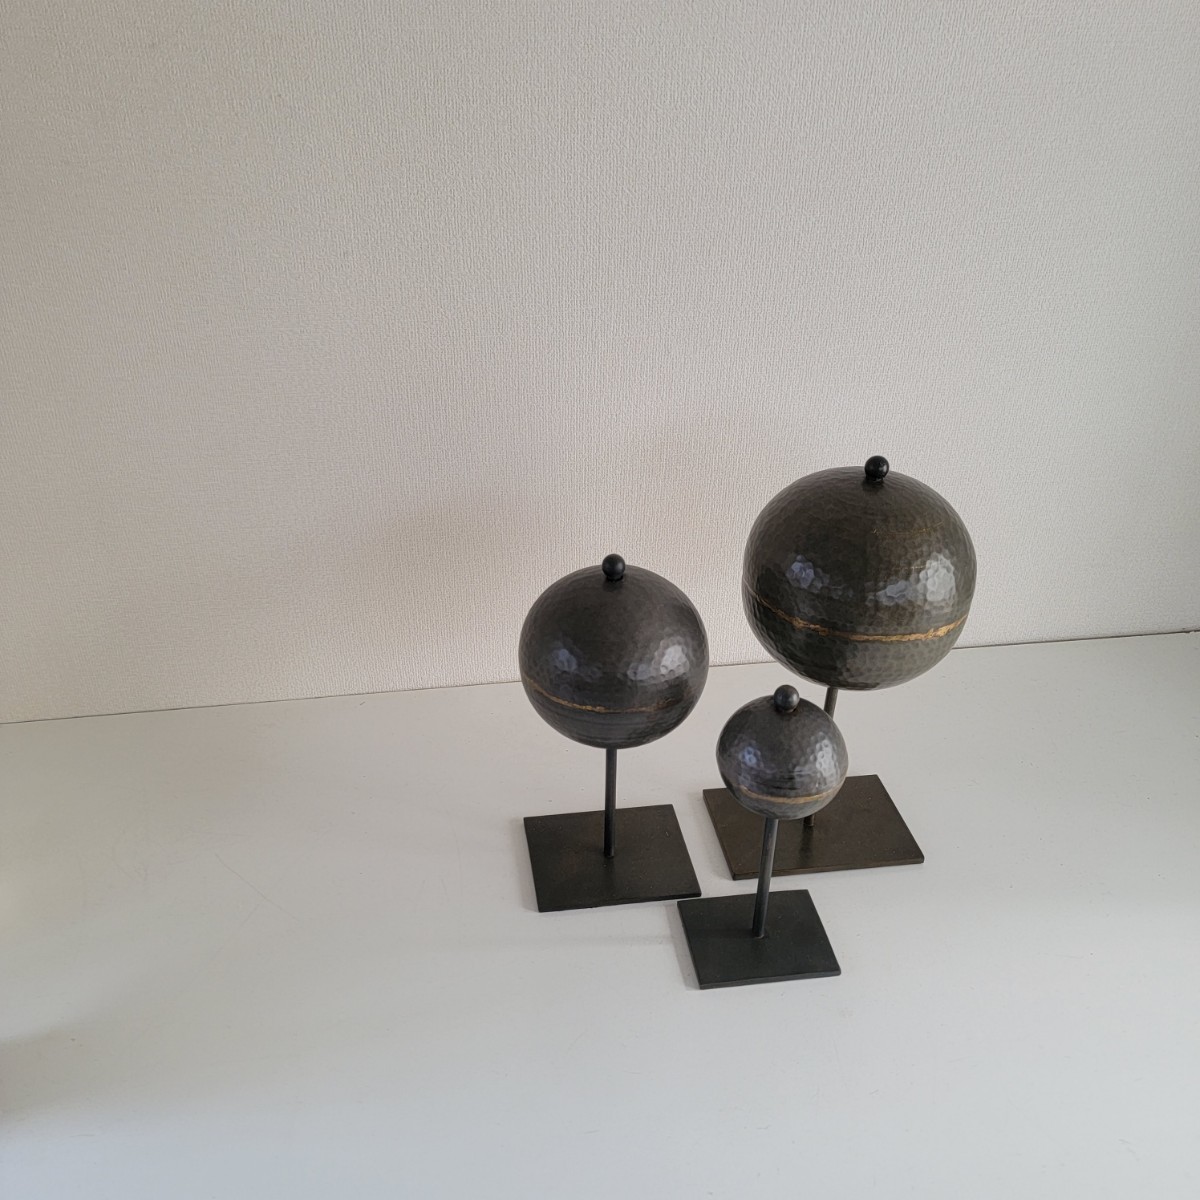 展示品 金属 無機質 球体 回転 立体オブジェ 三体セット 浮遊 空間 ディスプレイ モダン ミッドセンチュリー デザイン 置物 オブジェ _画像9